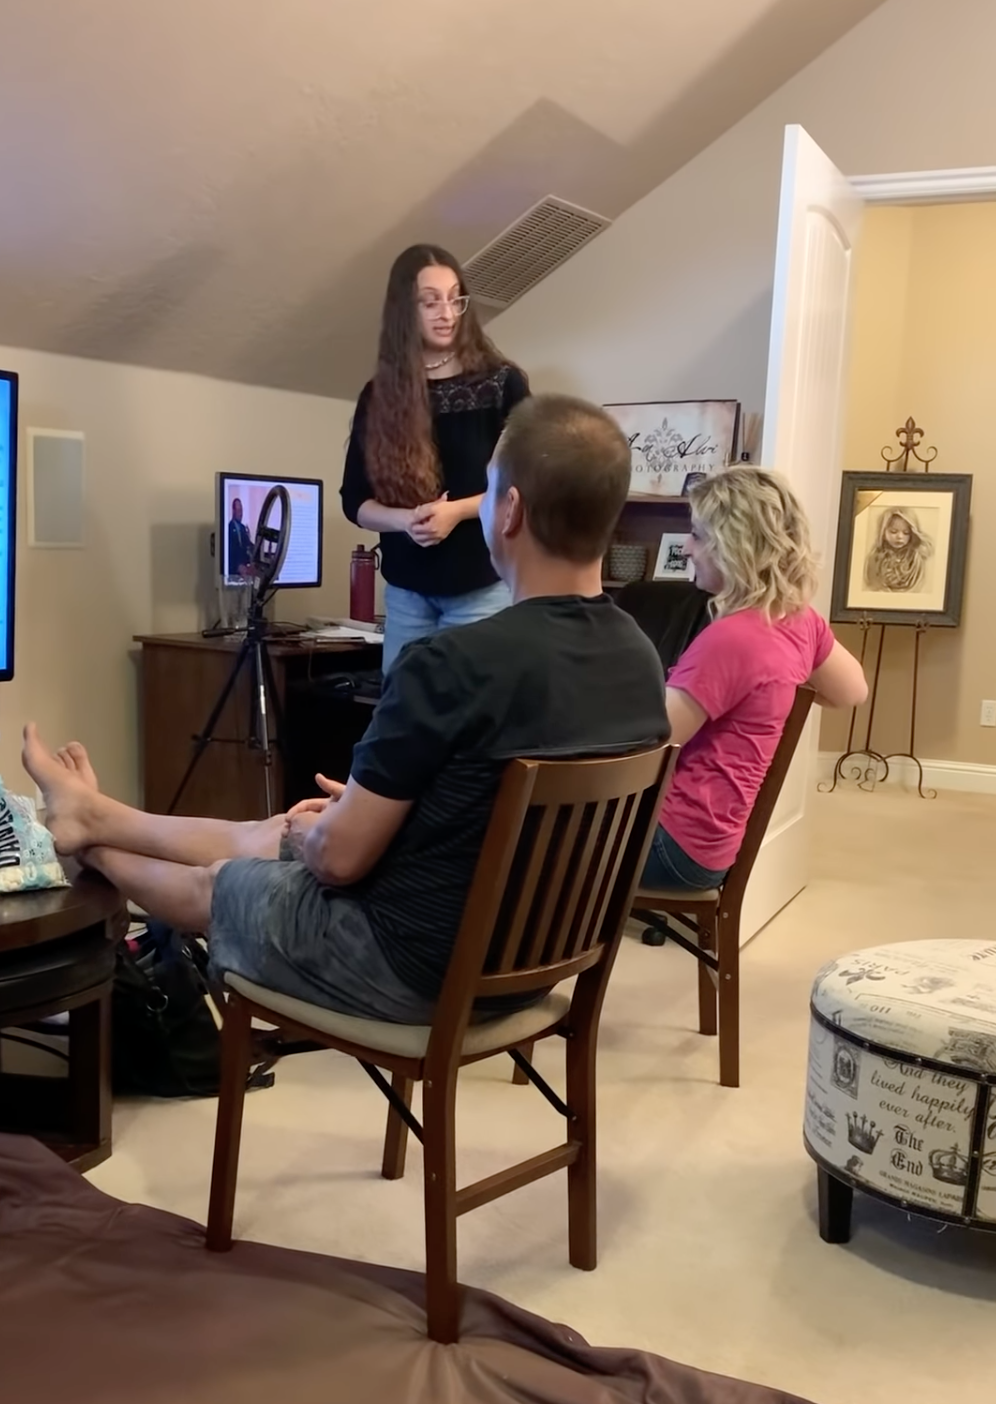 Mujer revela a sus papás que es stripper con una presentación de PowerPoint